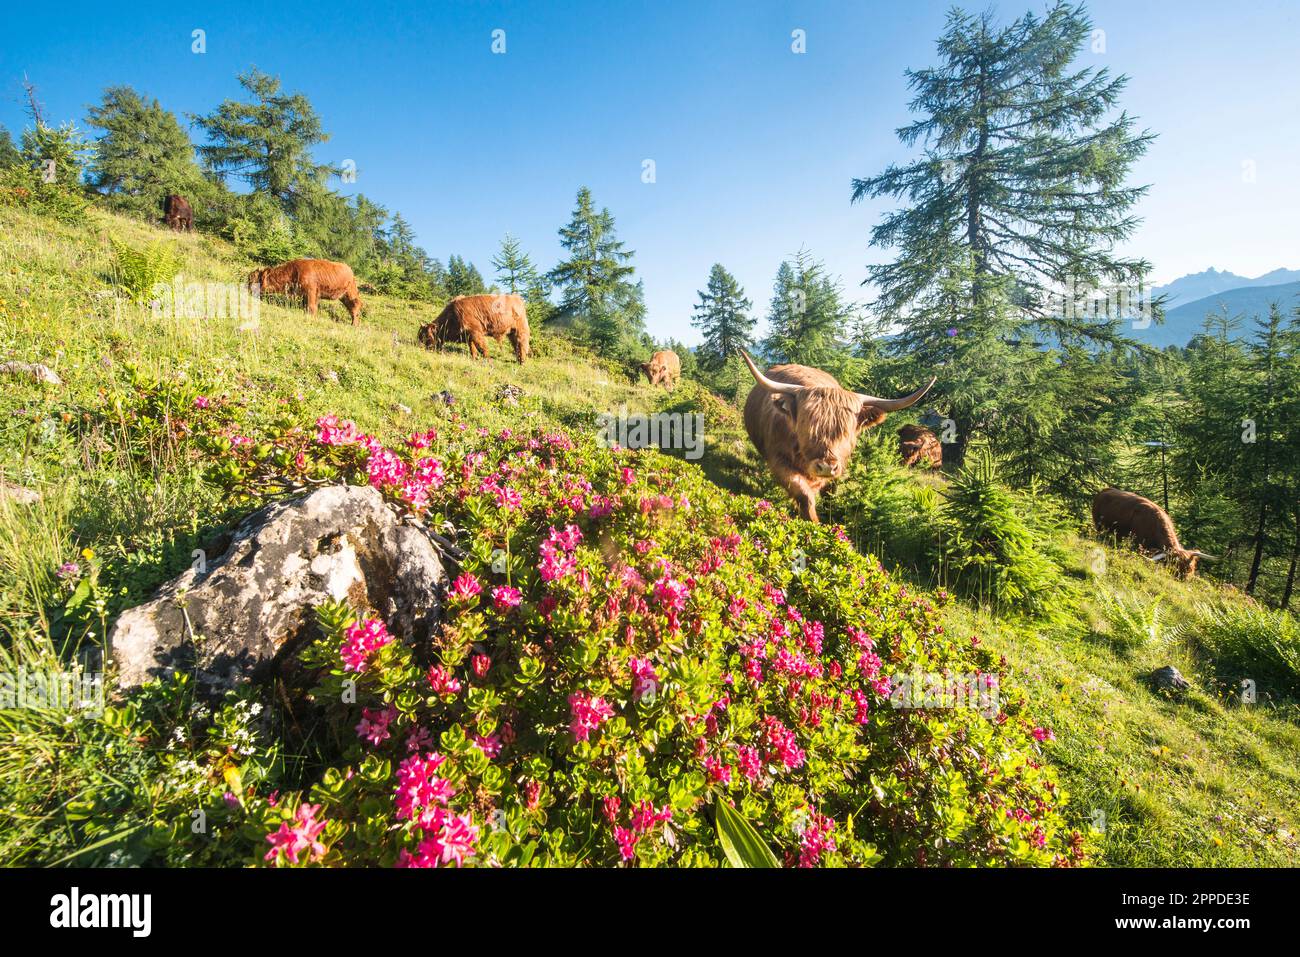 Austria, Salzburger Land, Altenmarkt im Pongau, Highland cattle grazing in springtime pasture Stock Photo